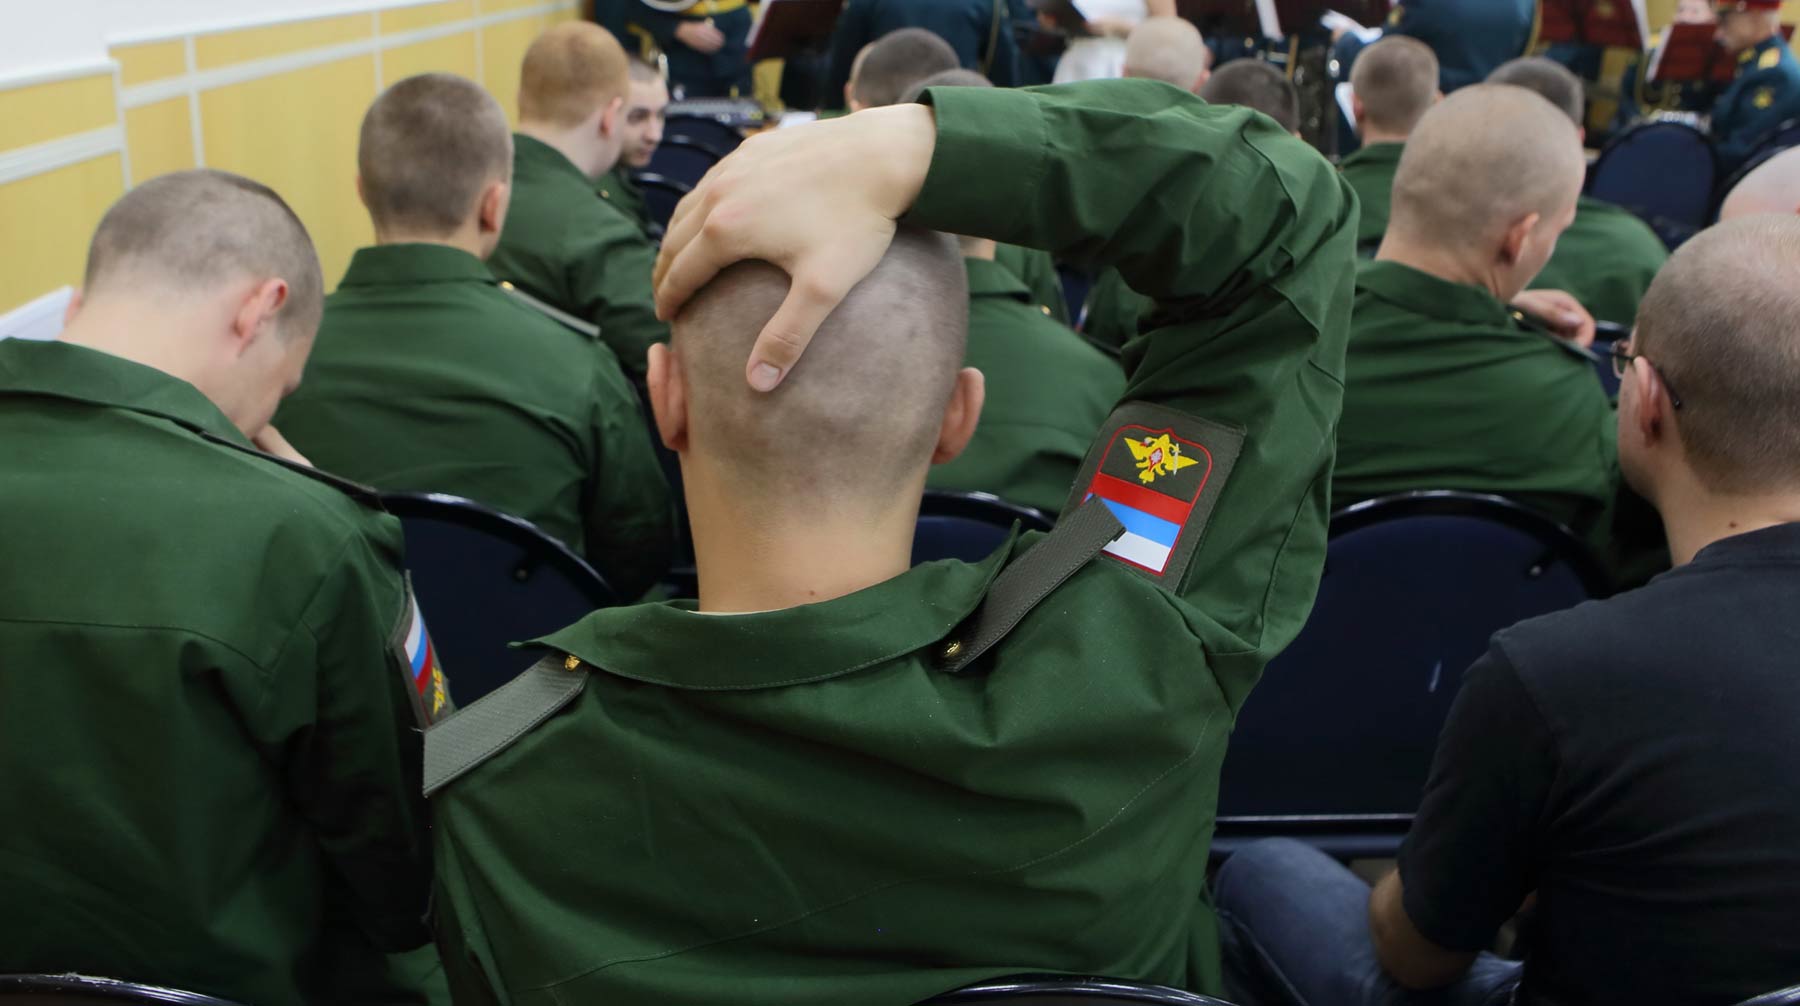 Солдат из Ставрополя успешно прошел медкомиссию, но умер во время занятий на турнике Фото: © GLOBAL LOOK press